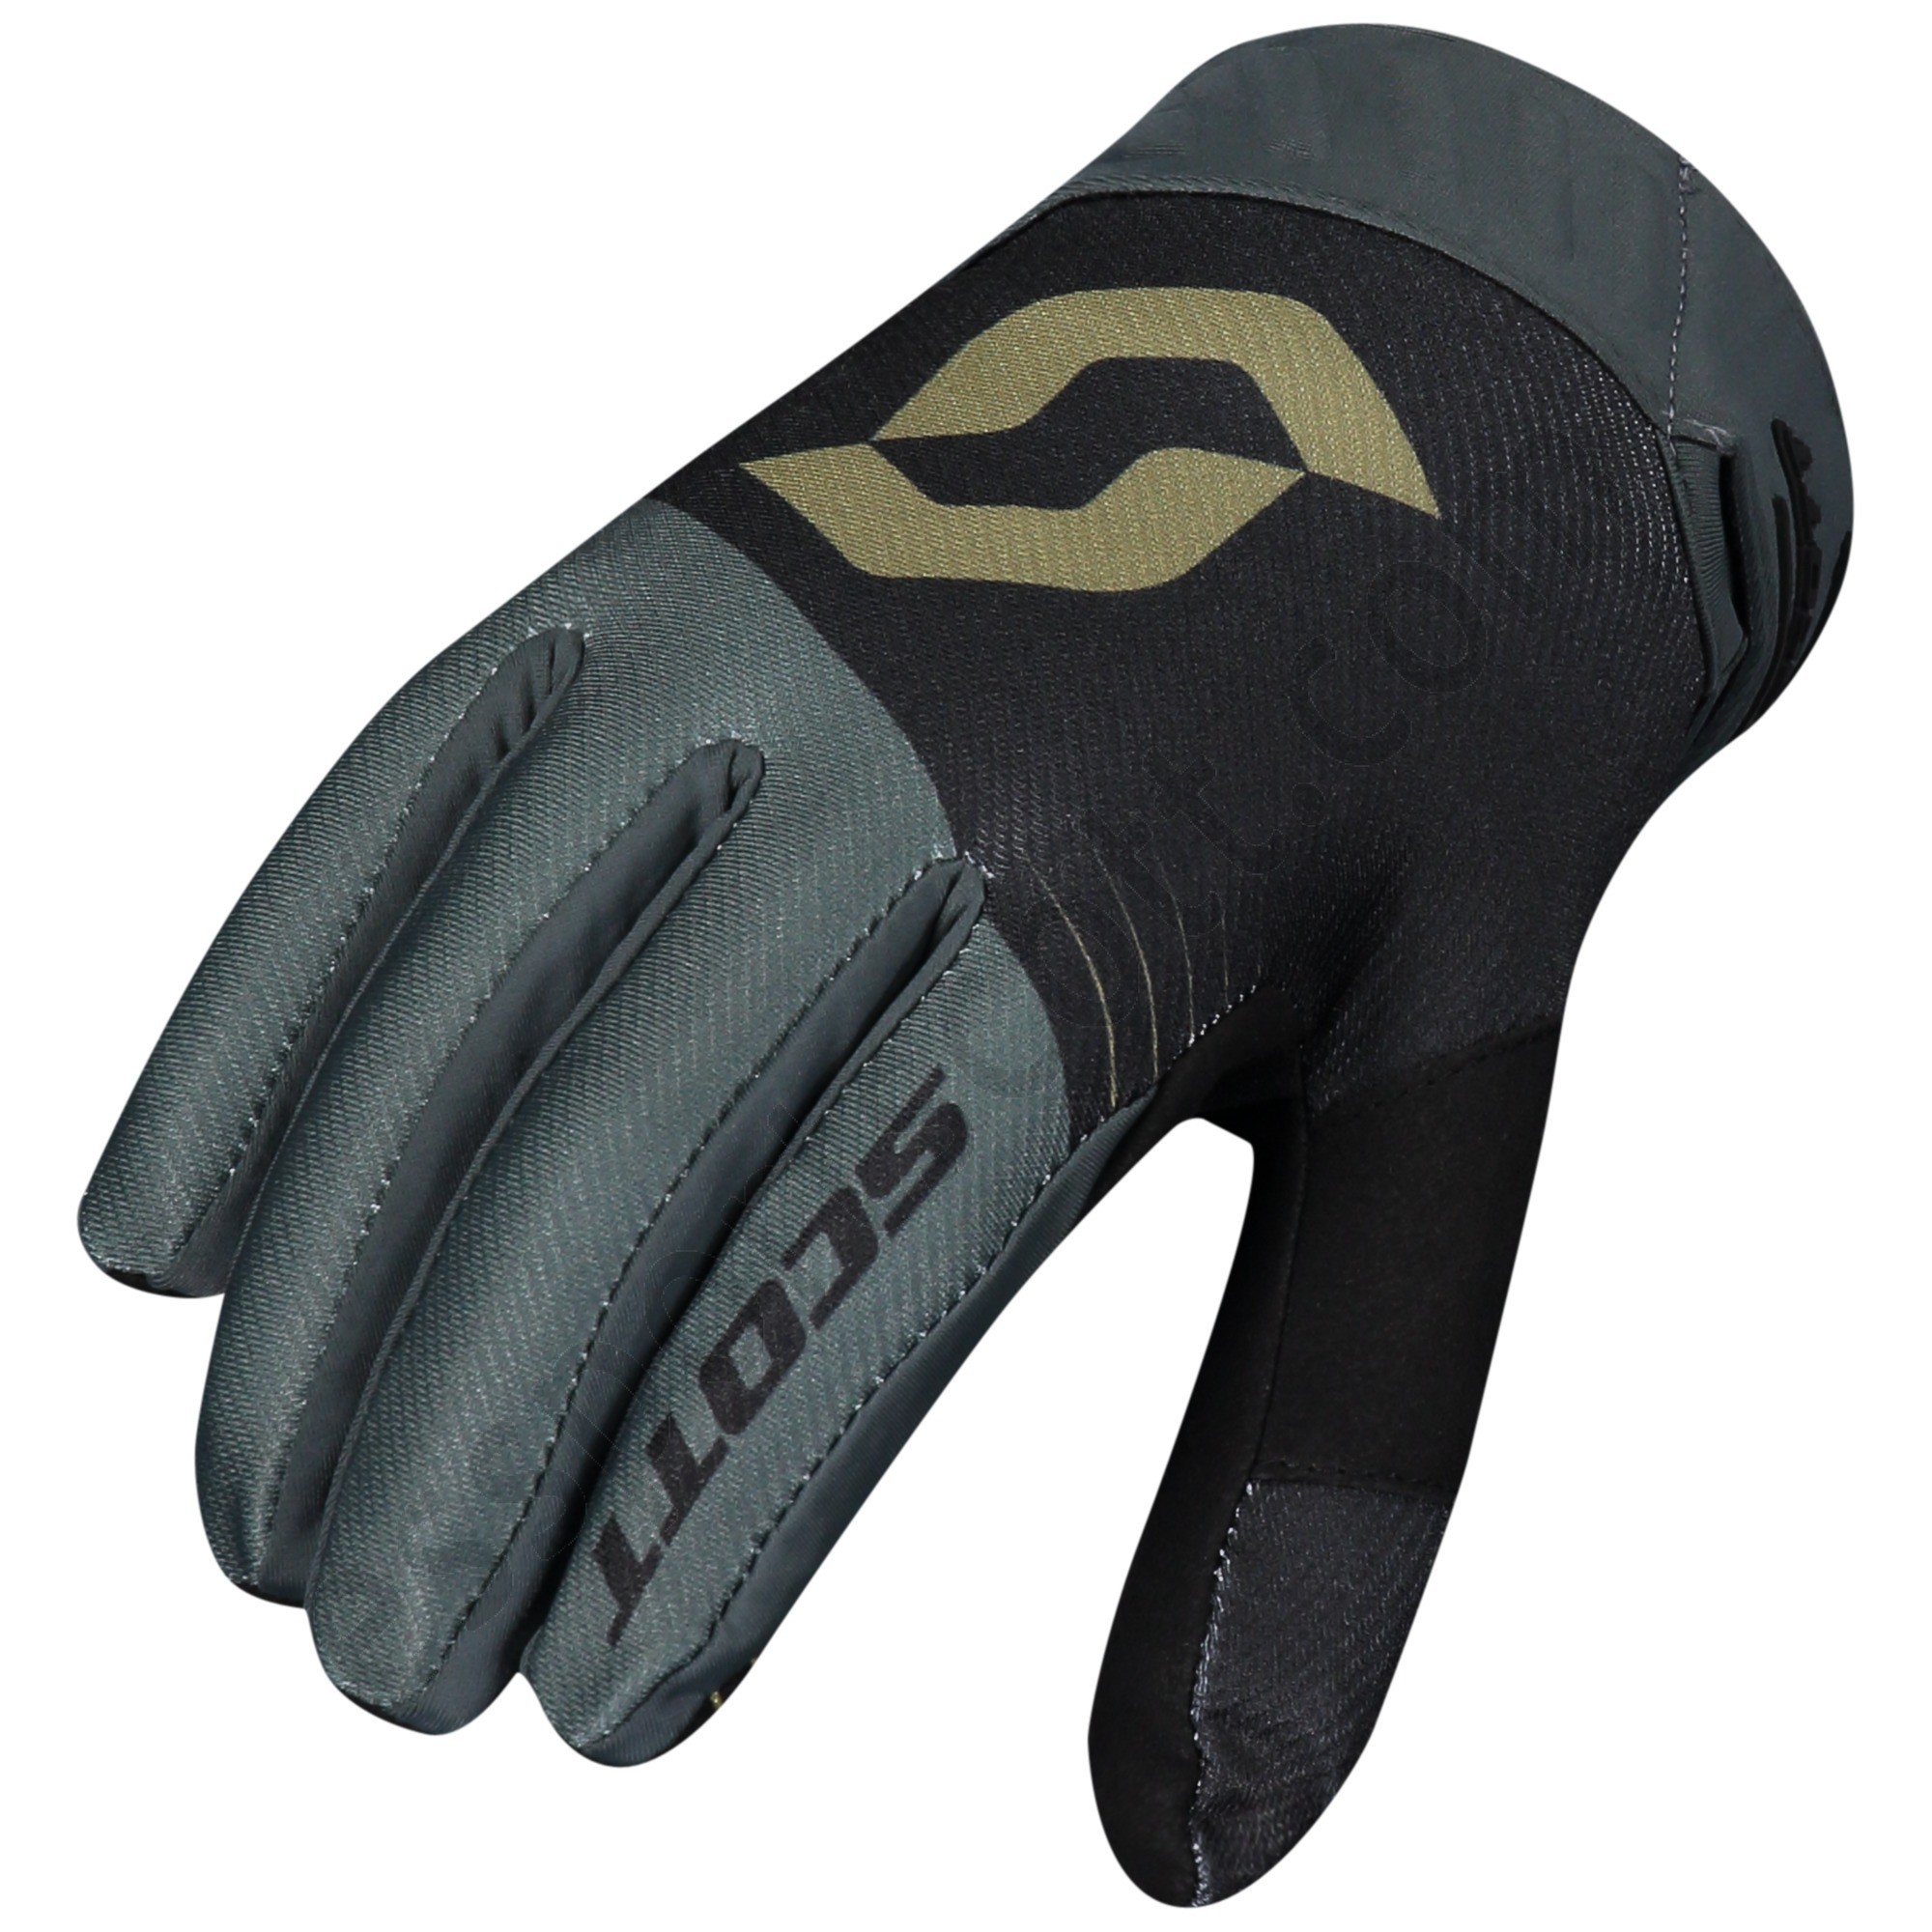 Scott Tienda ◇ 450 Podium Glove - Scott Tienda ◇ 450 Podium Glove